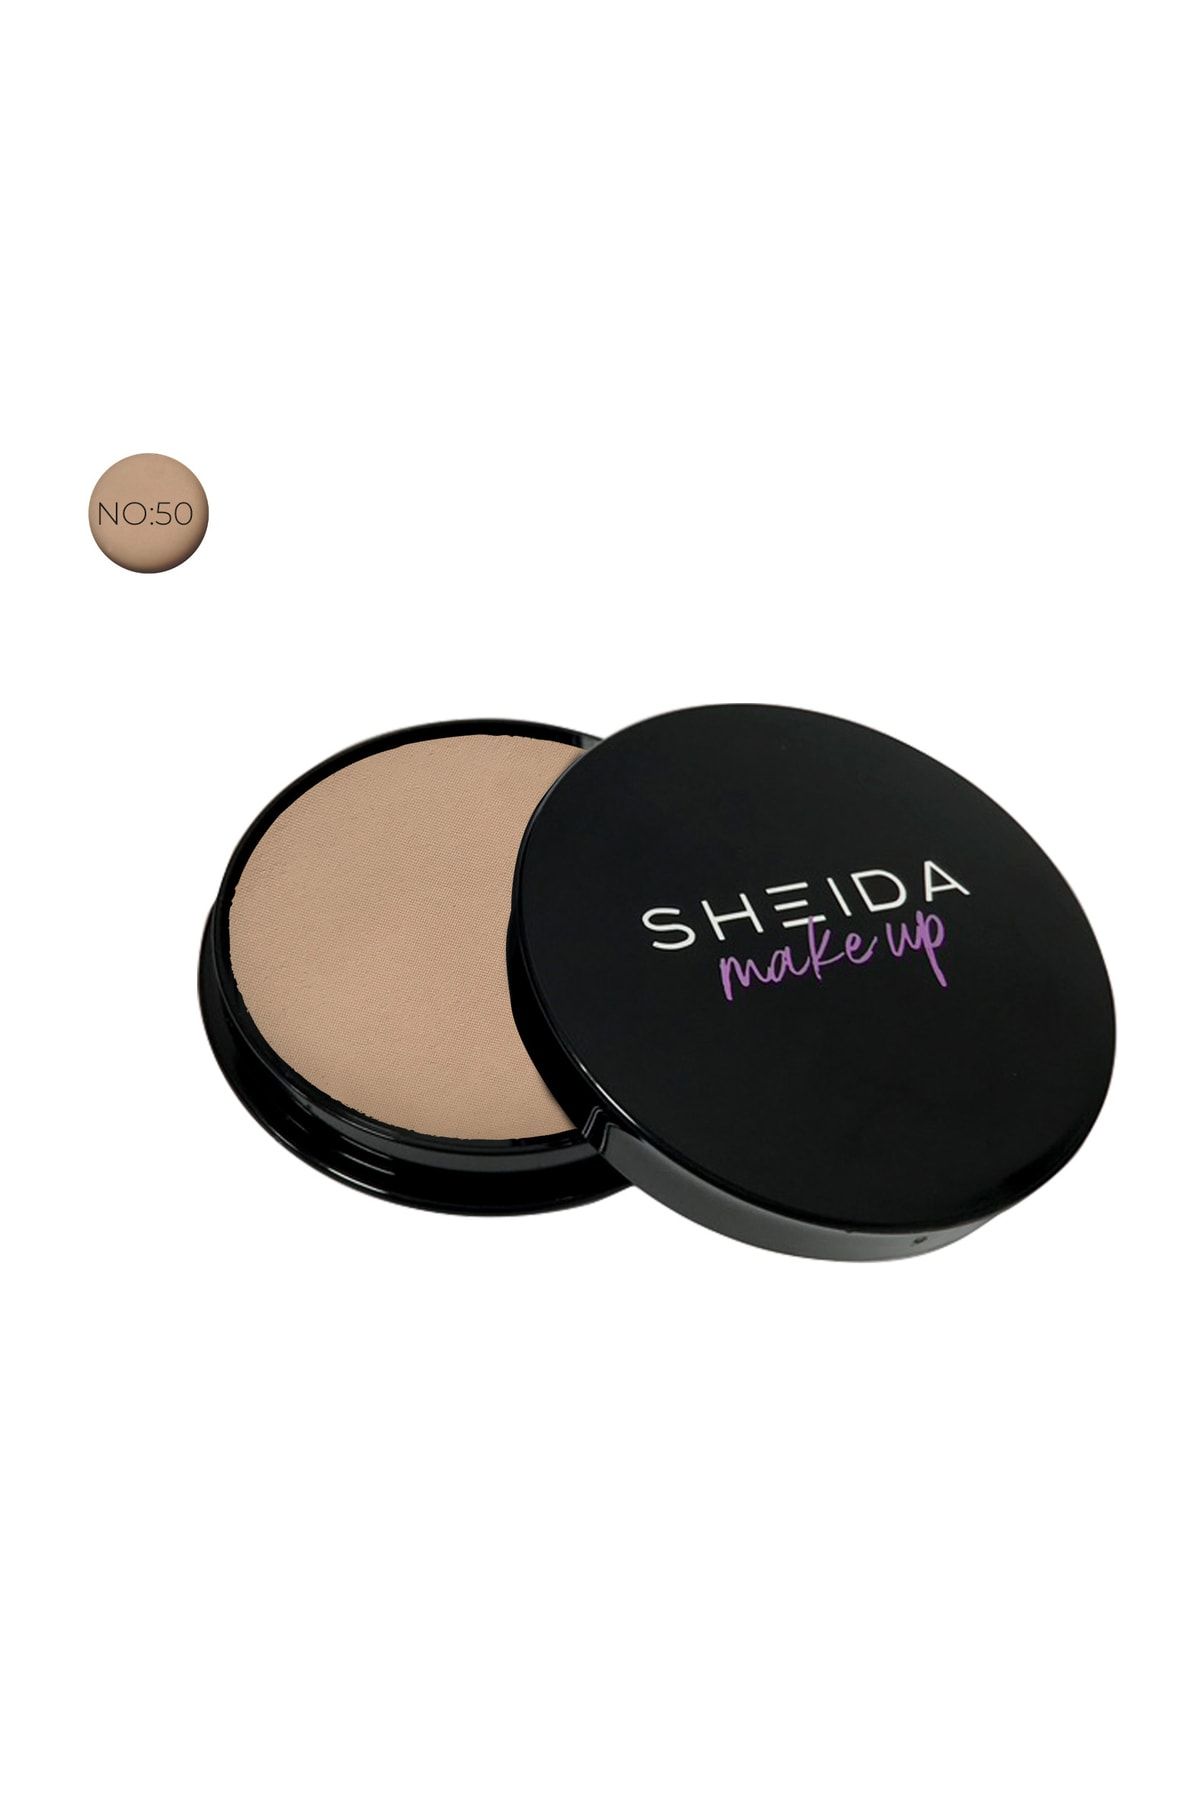 Sheida Sılken Powder (PUDRA) No:50